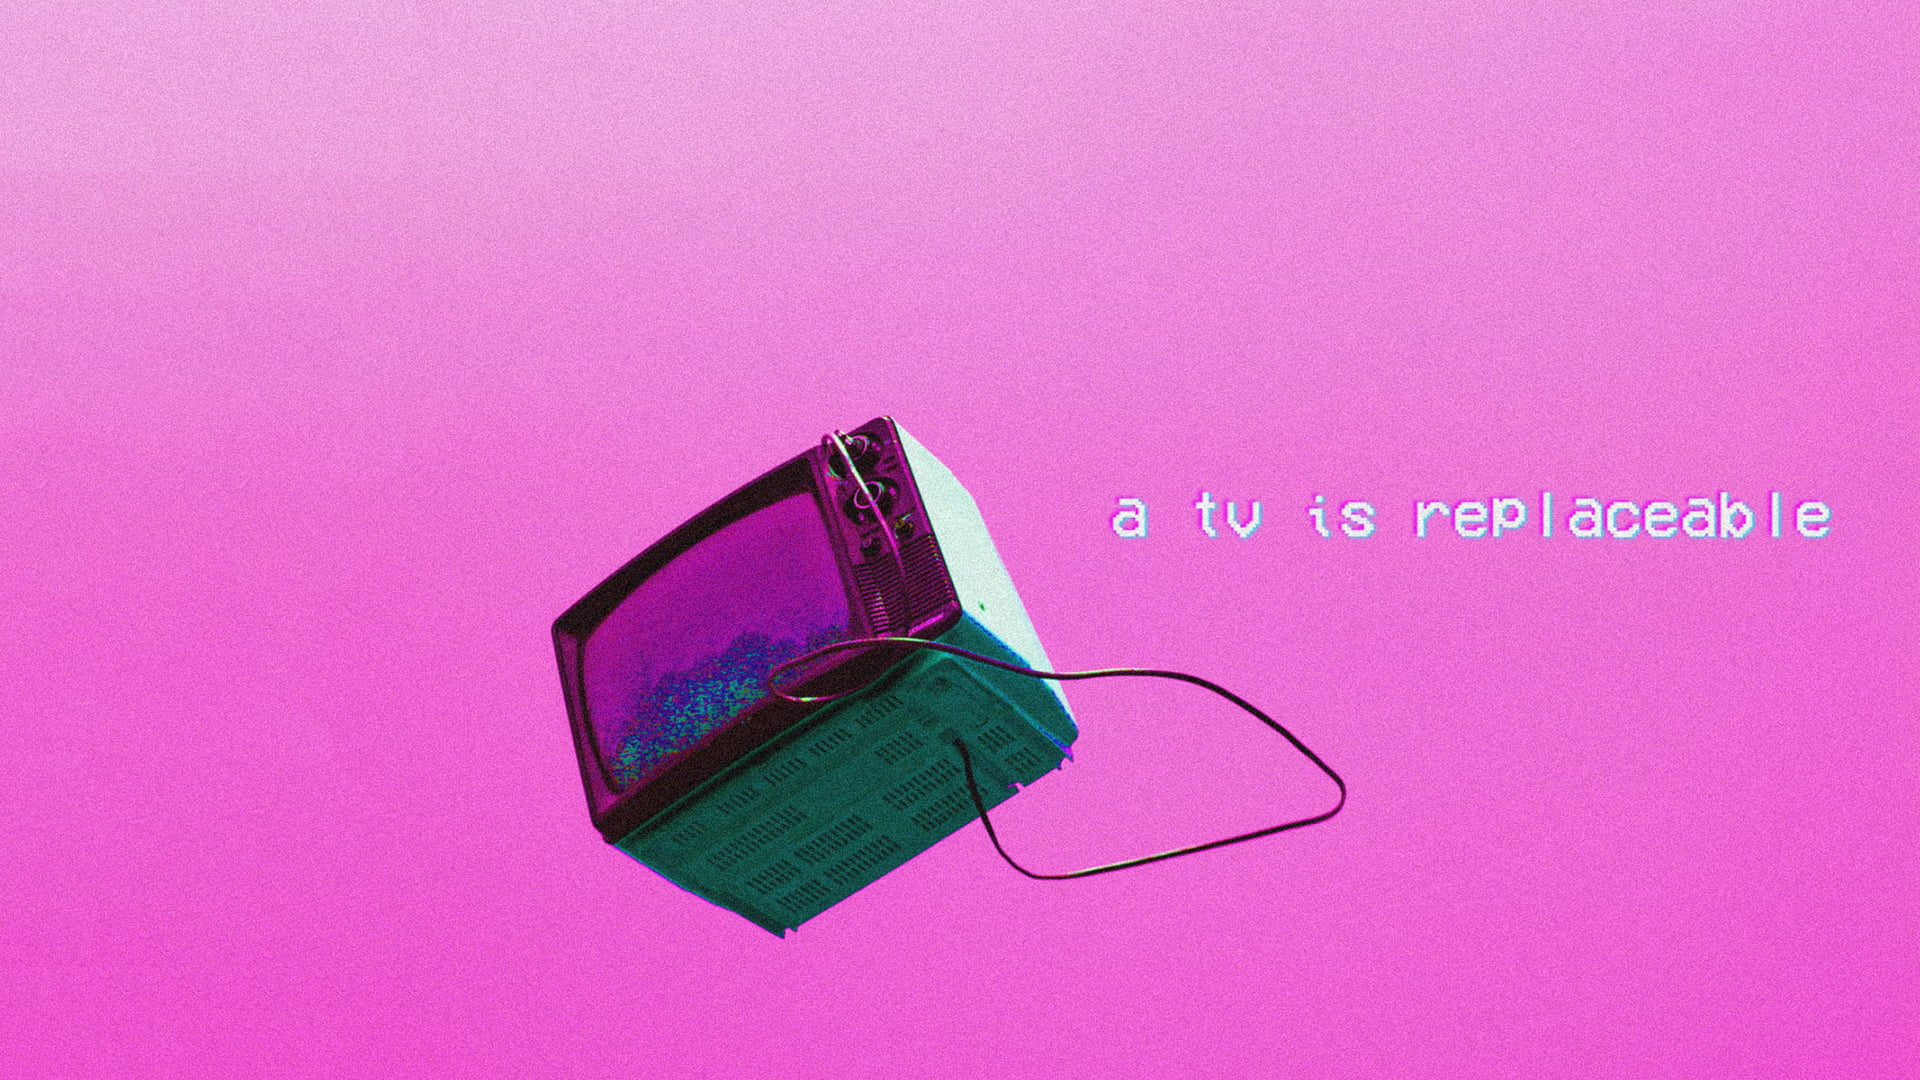 black CRT TV, vaporwave, pink background, TV, depressing